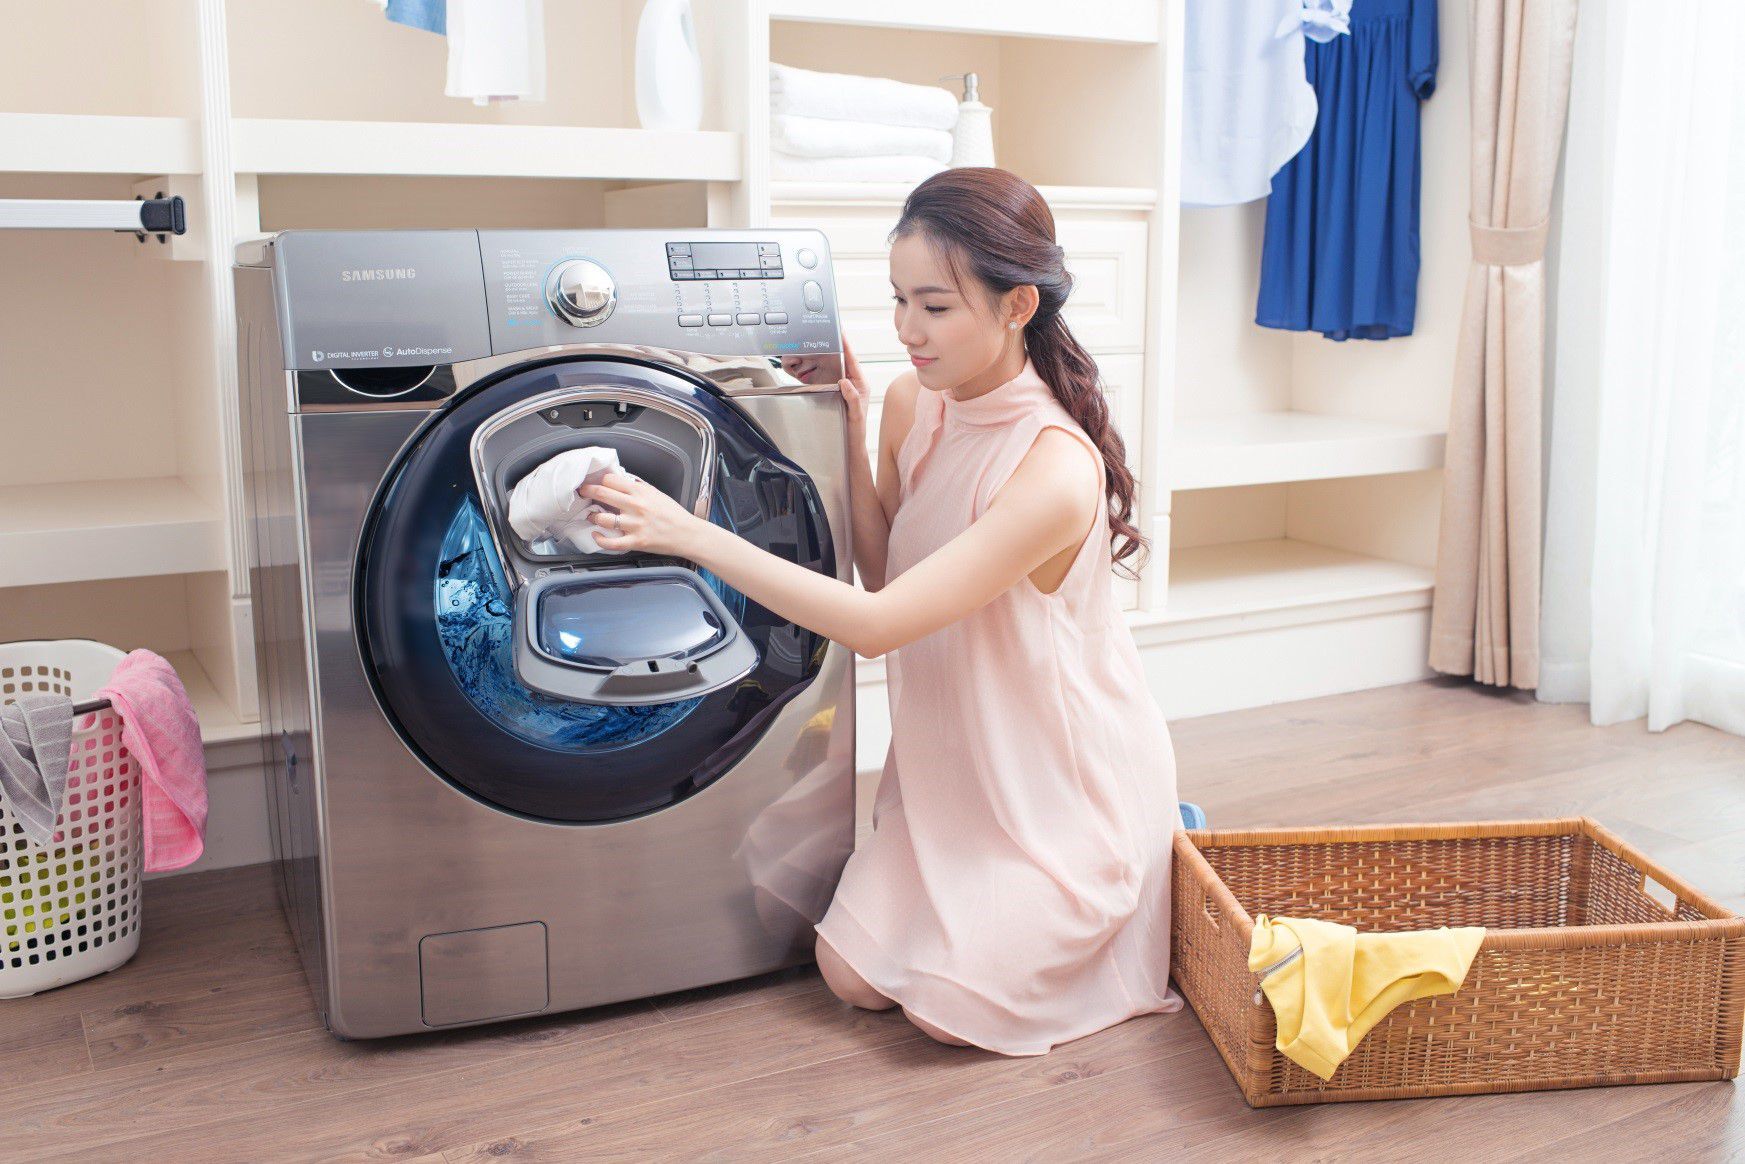 Hướng dẫn cách sử dụng máy giặt Samsung cửa ngang các tính năng cơ bản